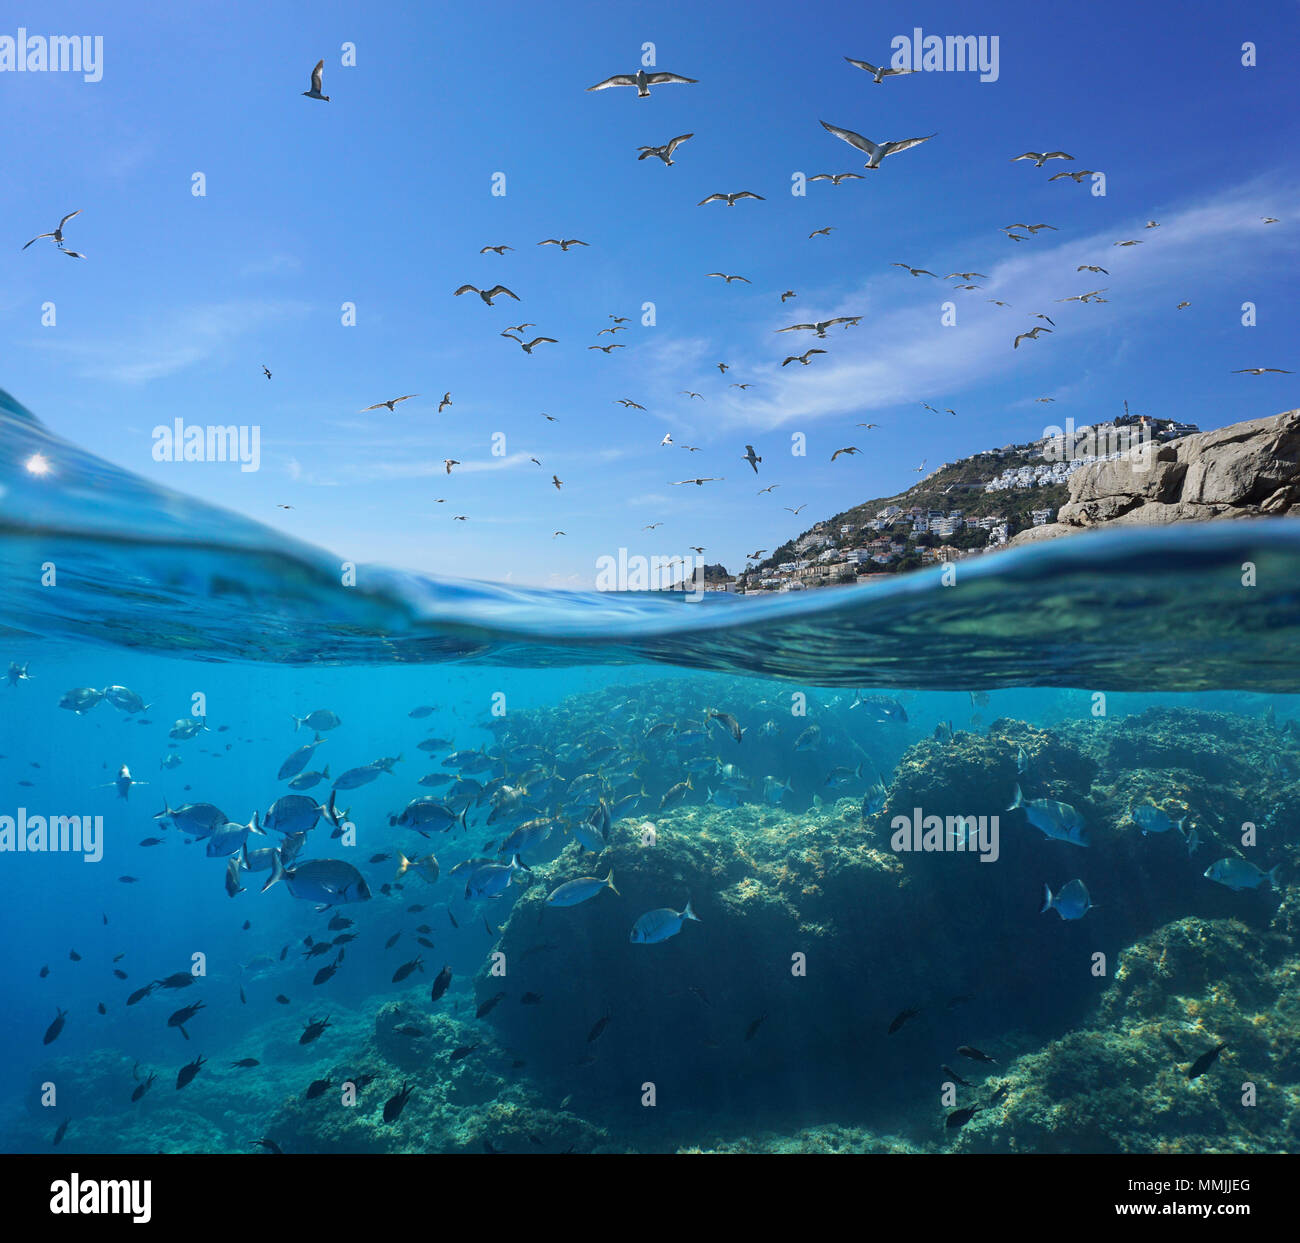 Uccelli marini volare nel cielo e una secca di pesce con rocce sottomarine, vista suddivisa al di sopra e al di sotto della superficie dell'acqua, mare Mediterraneo, spagna Costa Brava Foto Stock